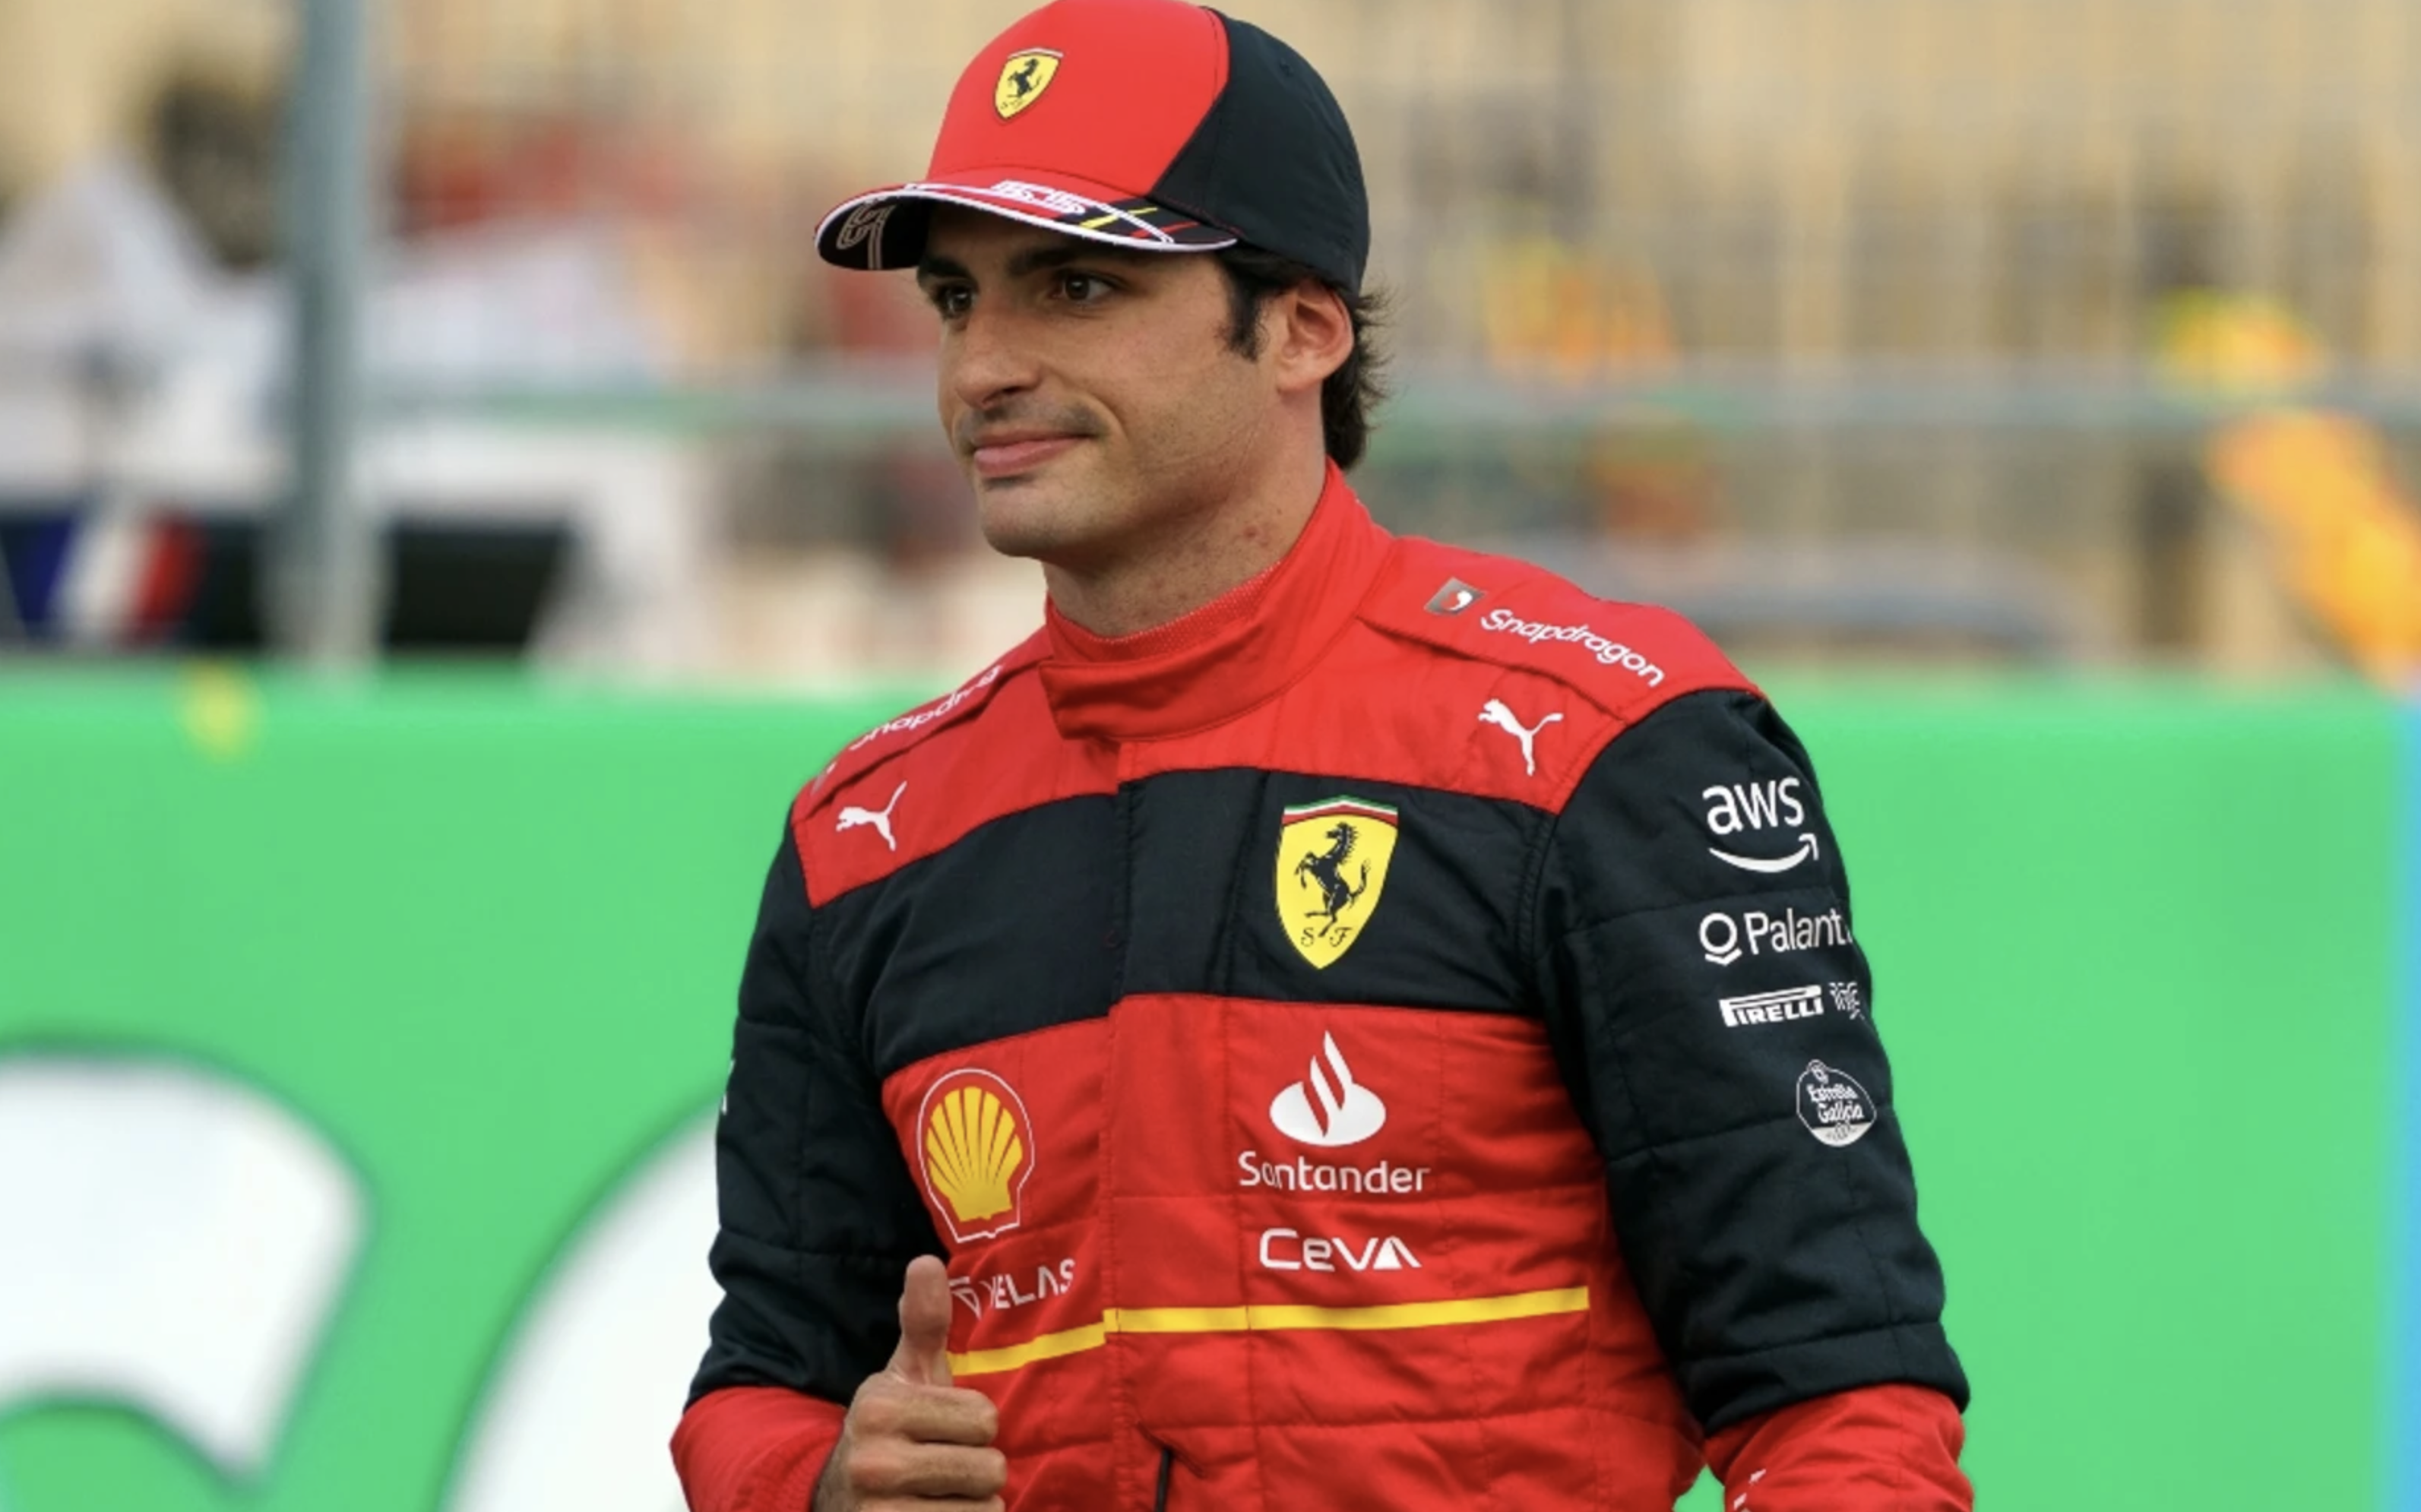 Sainz domina, por delante de ‘Checo’, el segundo día de pruebas de la F1 en Bahrein